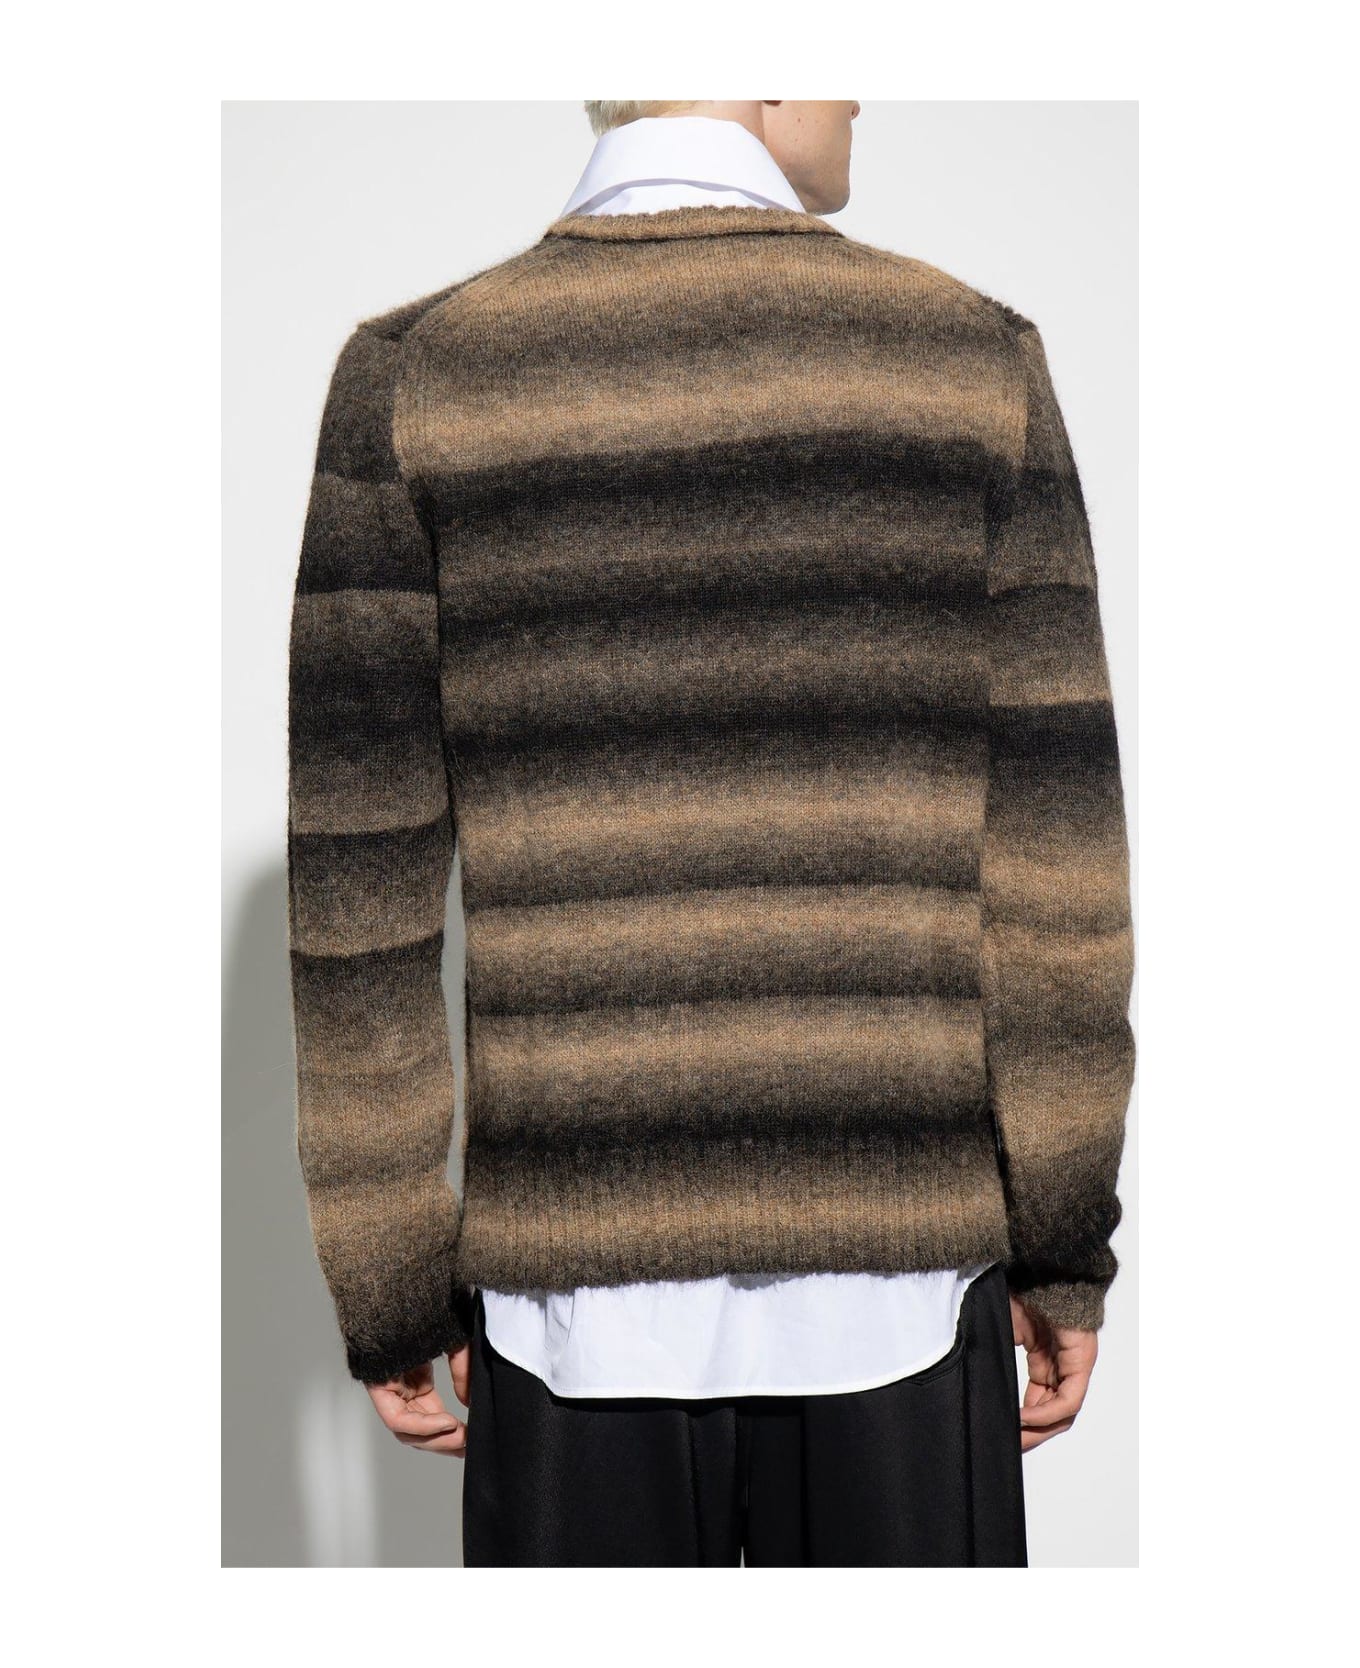 Paul Smith Striped Sweater - Cammello nero